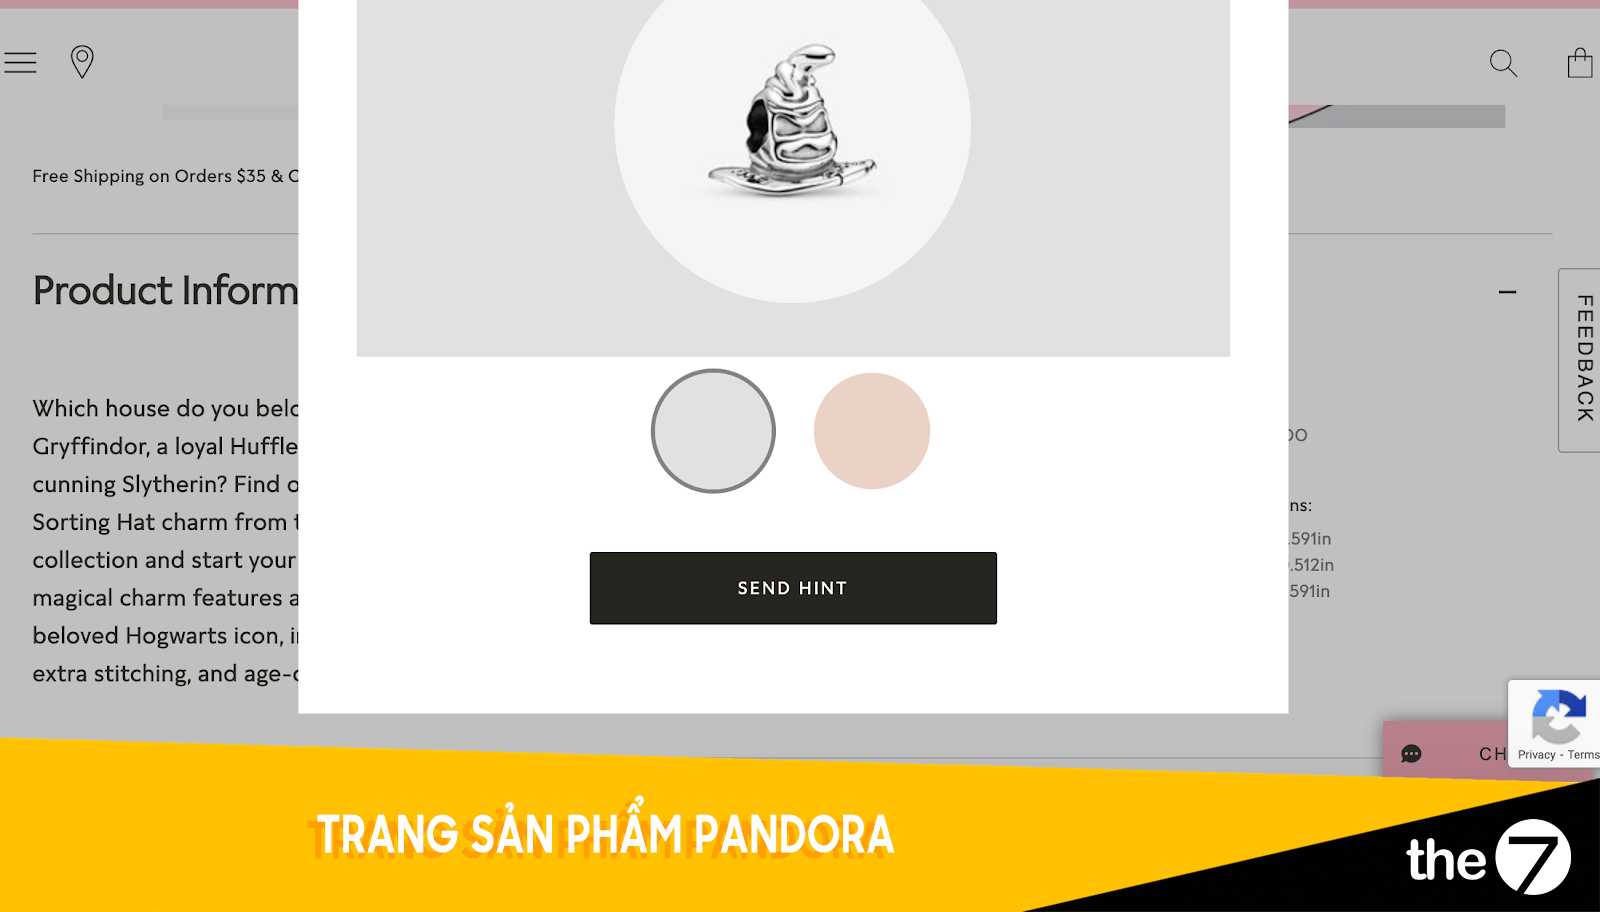 Thiết kế website bán hàng - Trang bán hàng Pandora